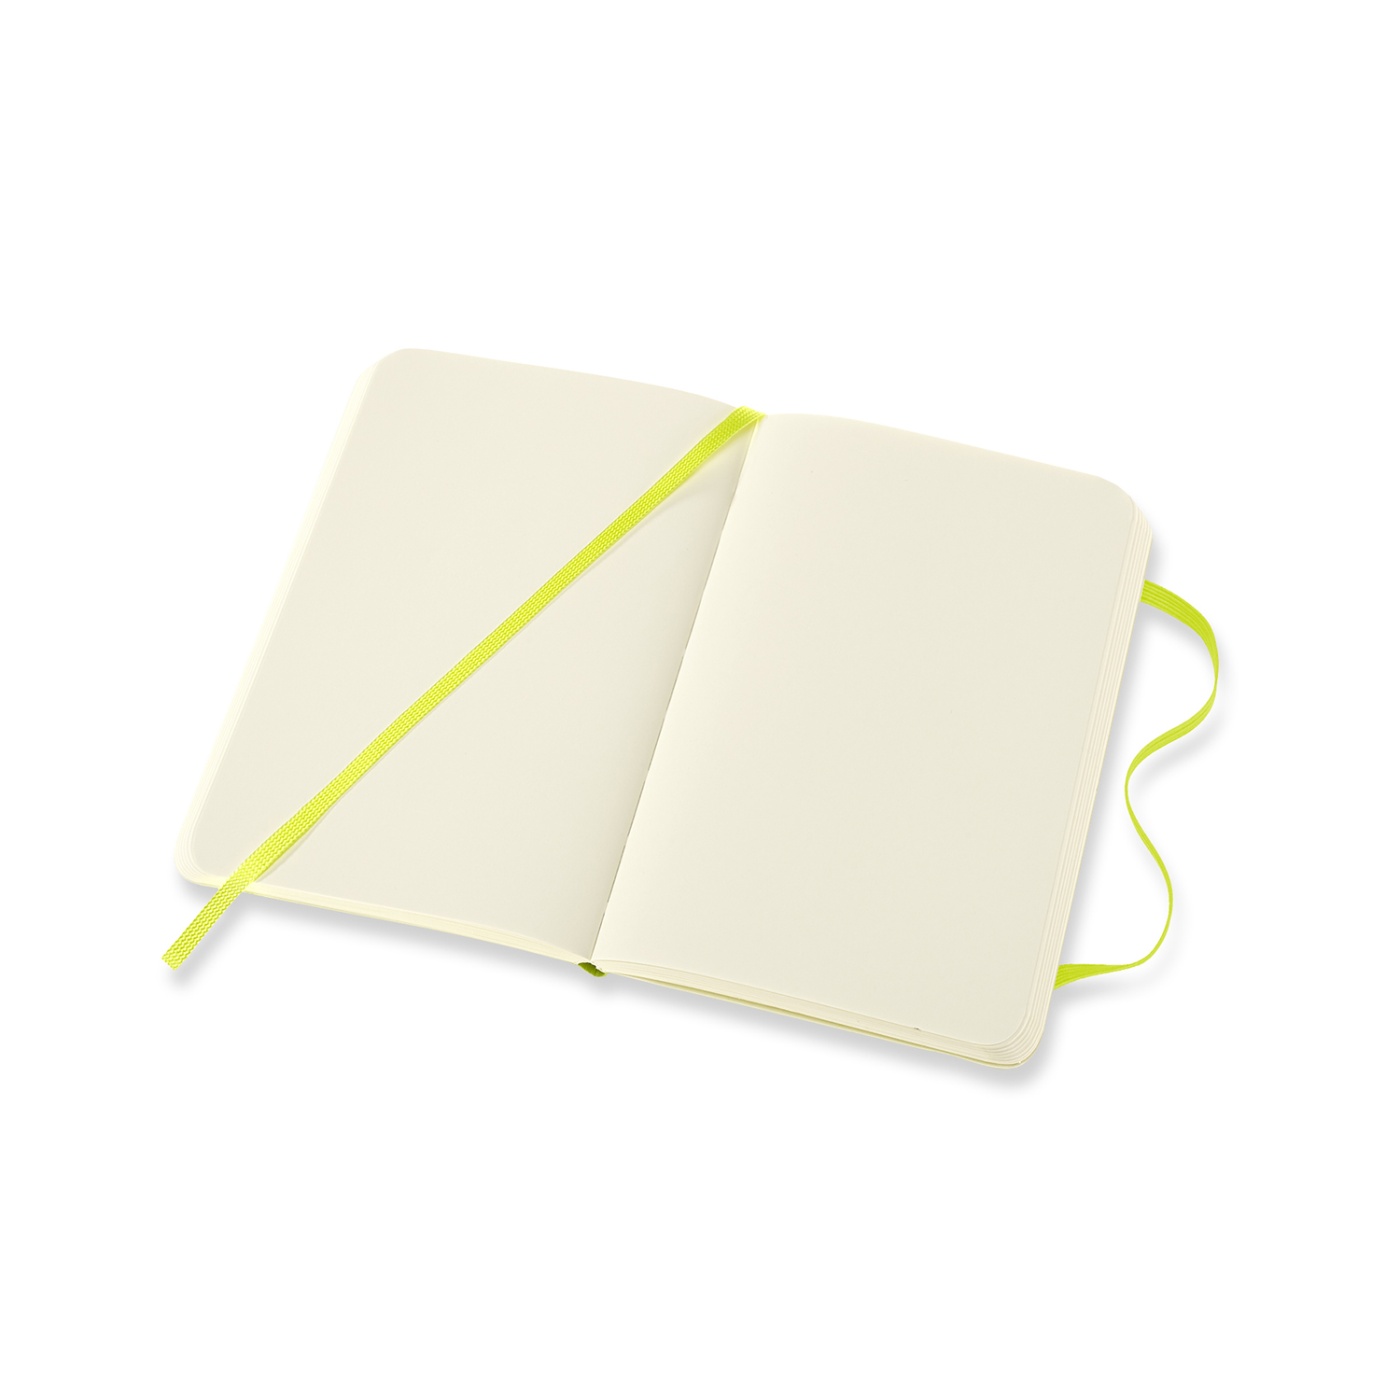 Classic Soft Cover Pocket Lemon Green in der Gruppe Papier & Blöcke / Schreiben und Notizen / Notizbücher bei Pen Store (100422_r)